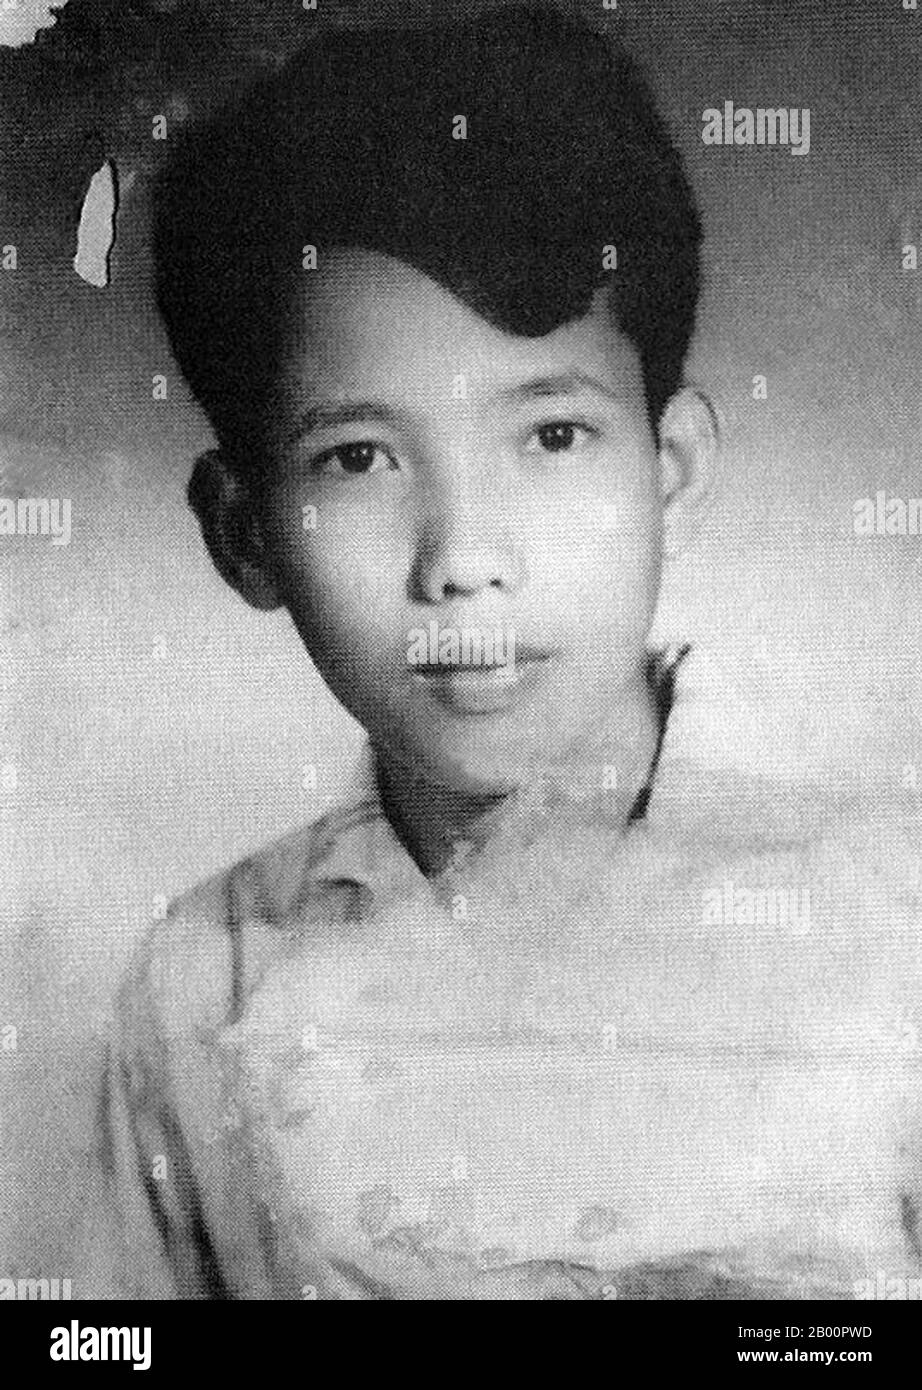 Cambogia: Kang Kek IEW (Comrade Duch), all'età di 17 anni. Kang Kek o Kaing Kek Iev, Kaing Guek EAV (Comrade Duch o Deuch), un sino-Khmer con il nome cinese Hang pin, è nato il 17 novembre 1942 nel villaggio di Choyaot, nel distretto di Kampong Chen, nella provincia di Kampong Thom. È conosciuto soprattutto per aver diretto il ramo speciale dei Khmer Rossi (Santebal) e per aver diretto il famigerato campo di prigionia Tuol Sleng (S-21) a Phnom Penh. Il primo capo dei Khmer rossi ad essere processato dalle Camere straordinarie delle corti della Cambogia per i crimini del regime, è stato condannato per crimini contro l'umanità, omicidi e torture Foto Stock